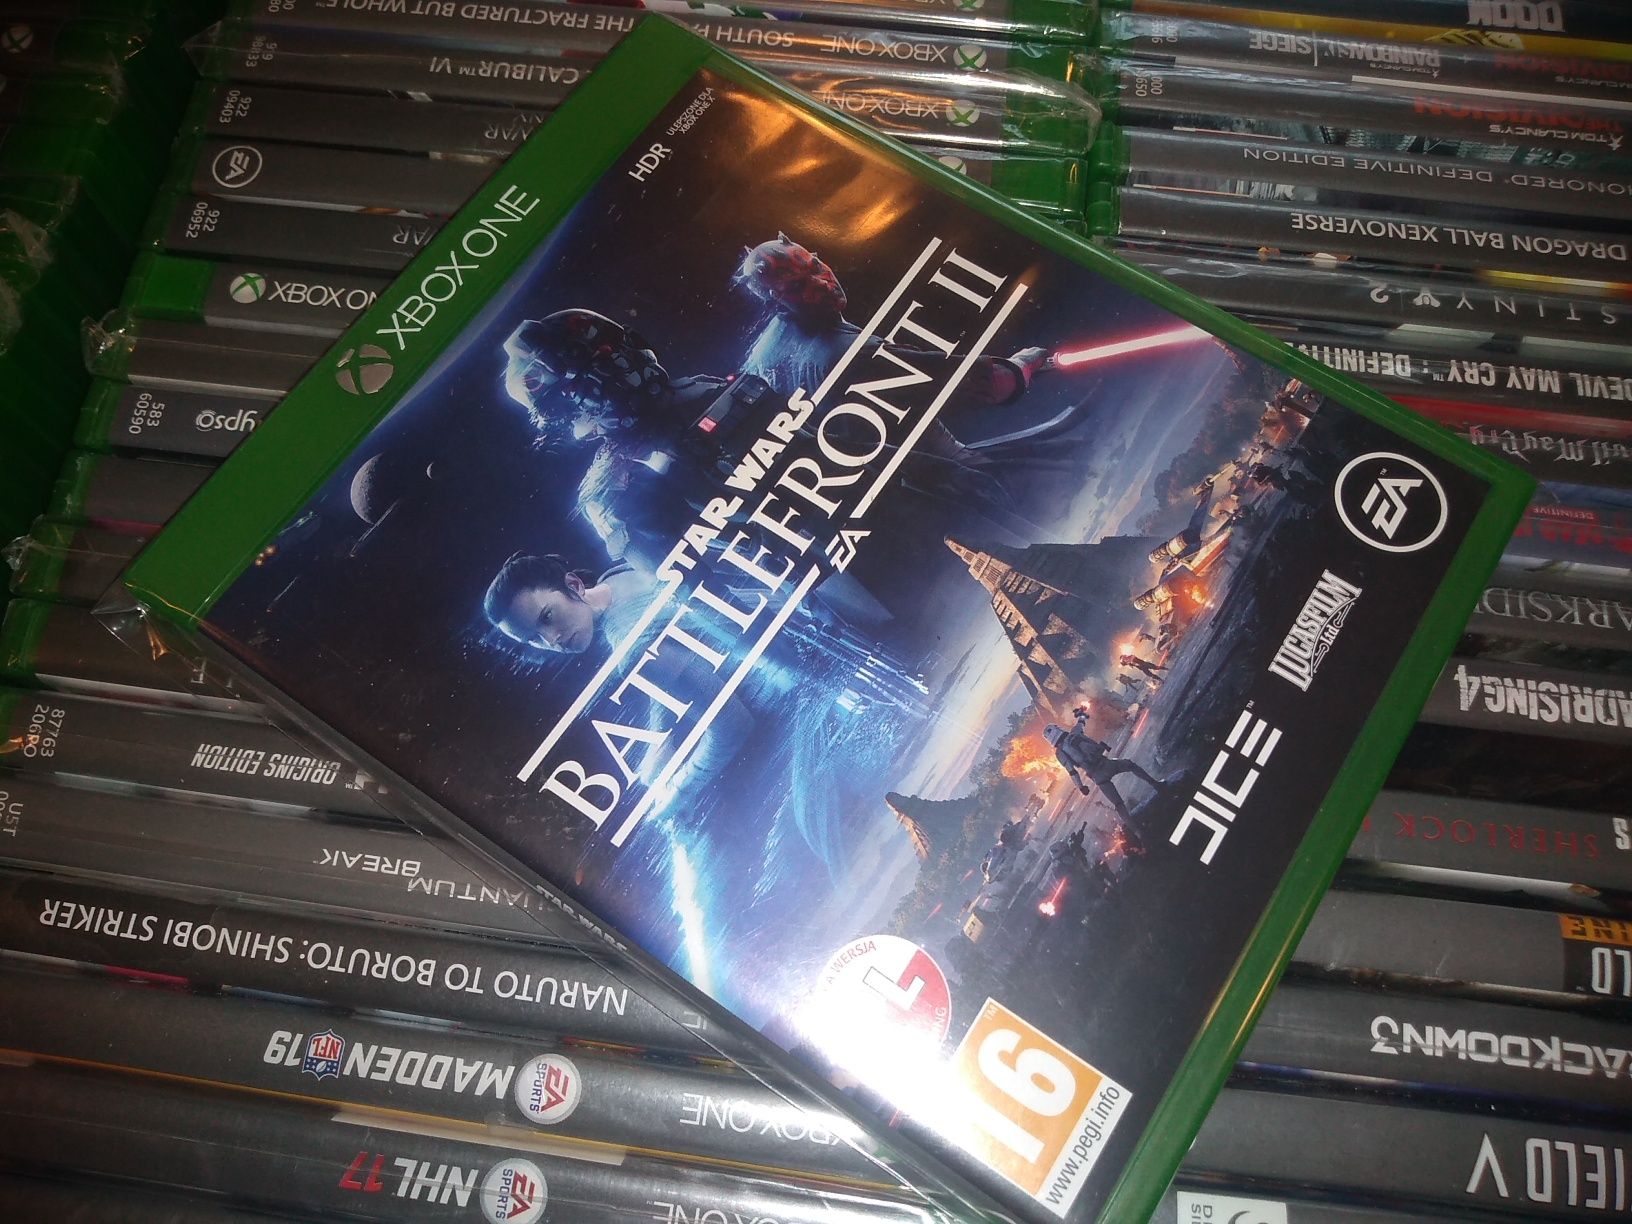 Star Wars Battlefront II 2 pl Xbox One możliwość zamiany SKLEP